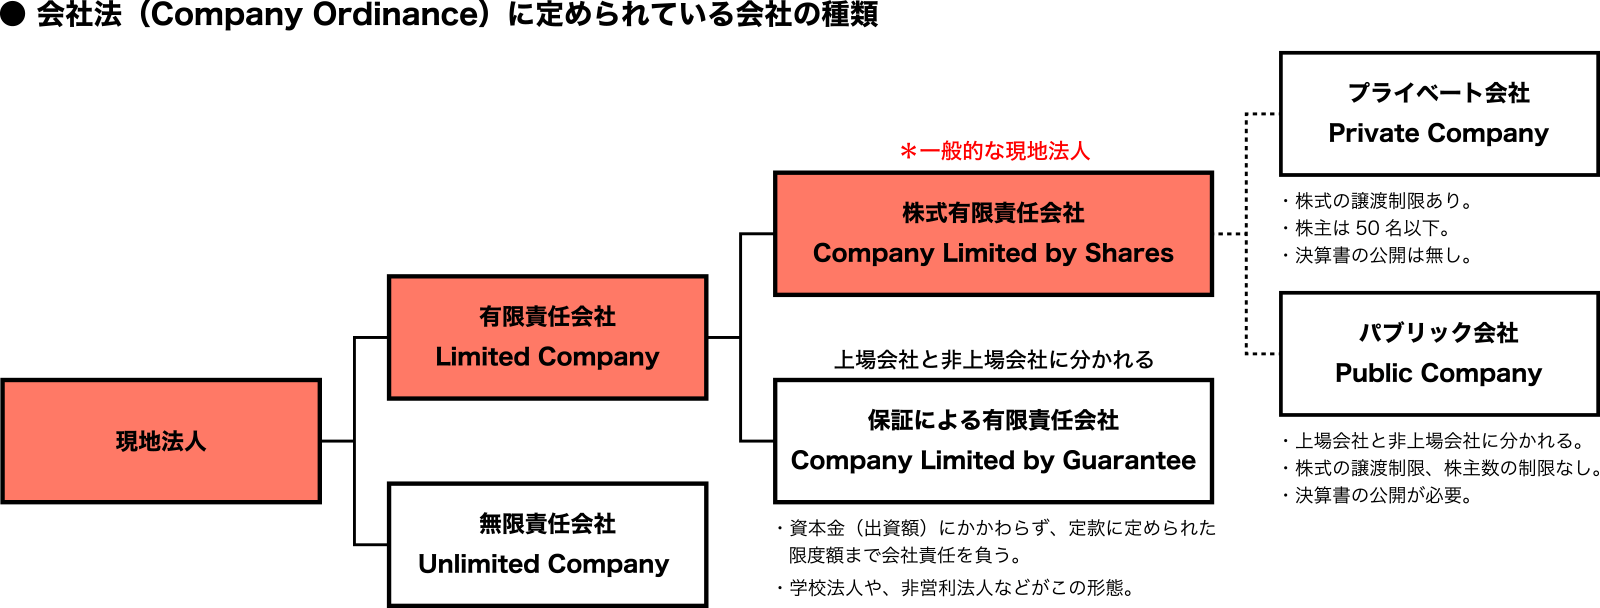 会社法（Company Ordinance）に定められている会社の種類